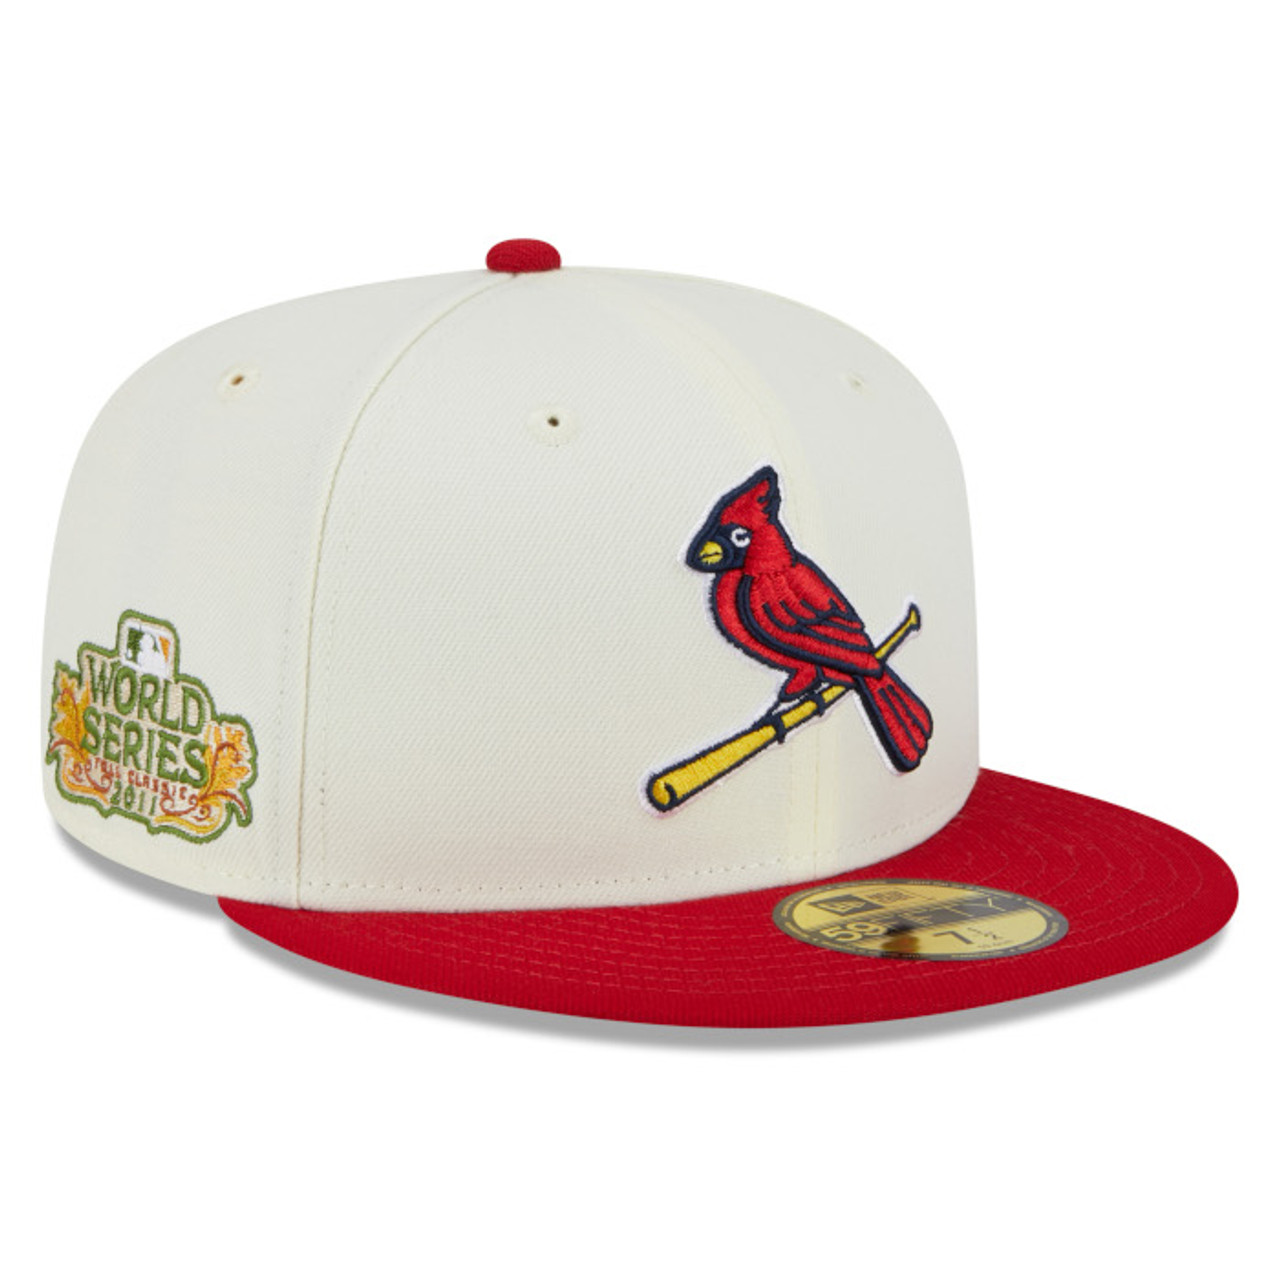 St. Louis Cardinals New Era Cooperstown Collection Centennial